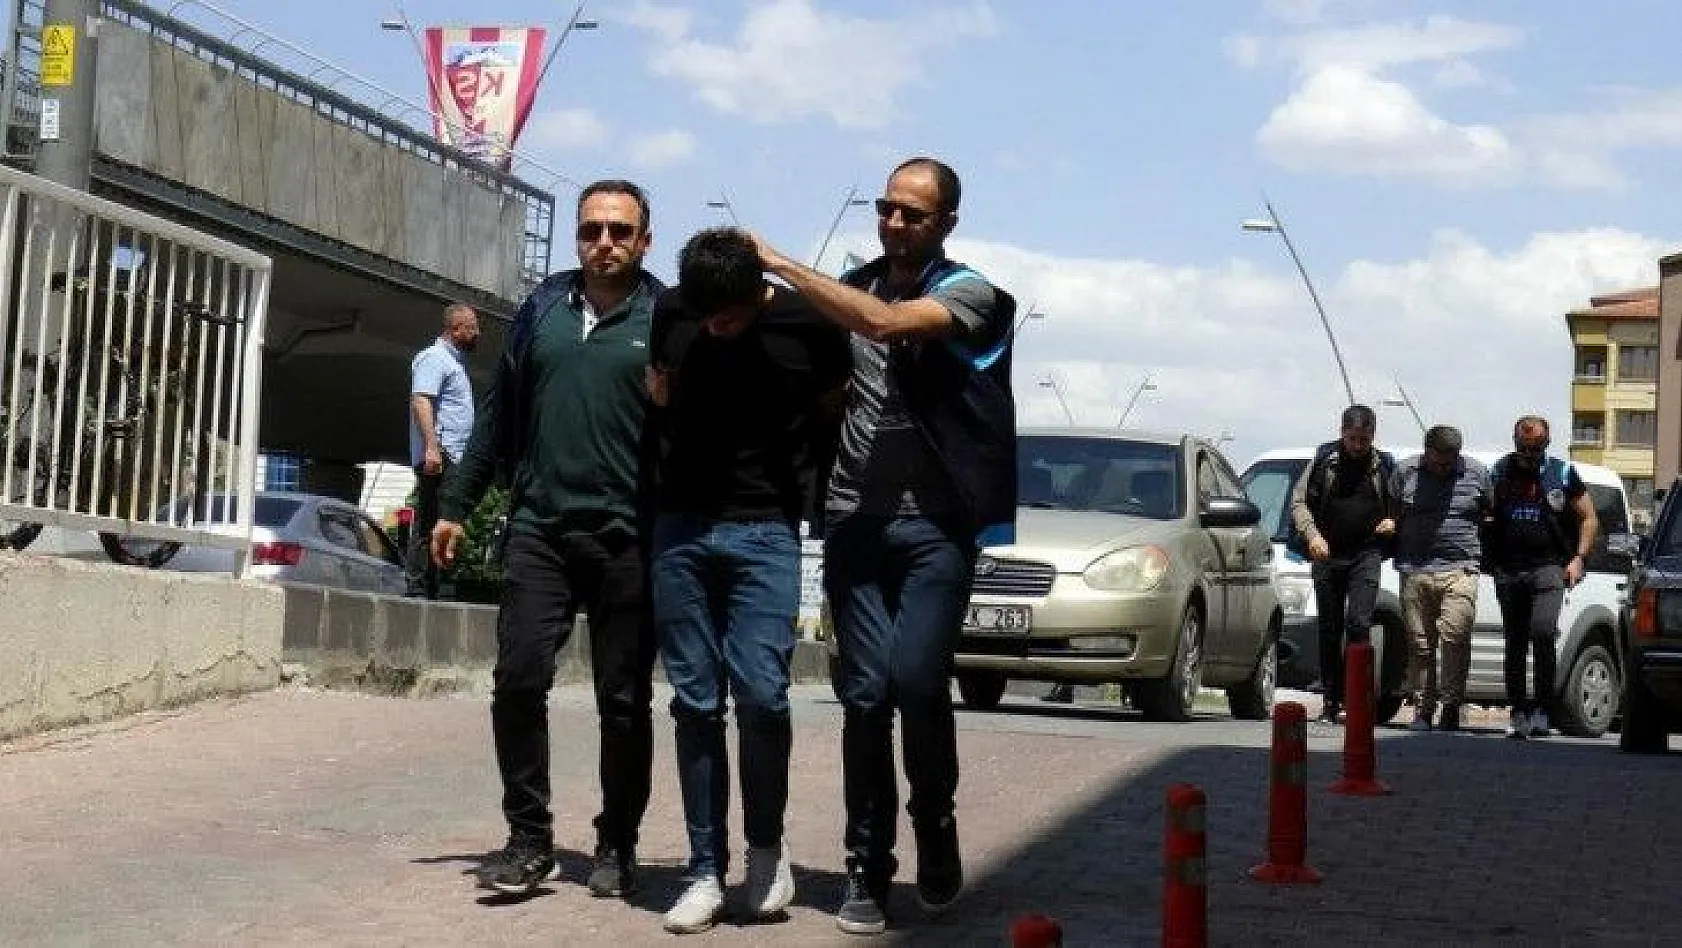 Kayseri'deki şoför cinayetinde baba ve oğlu tutuklandı